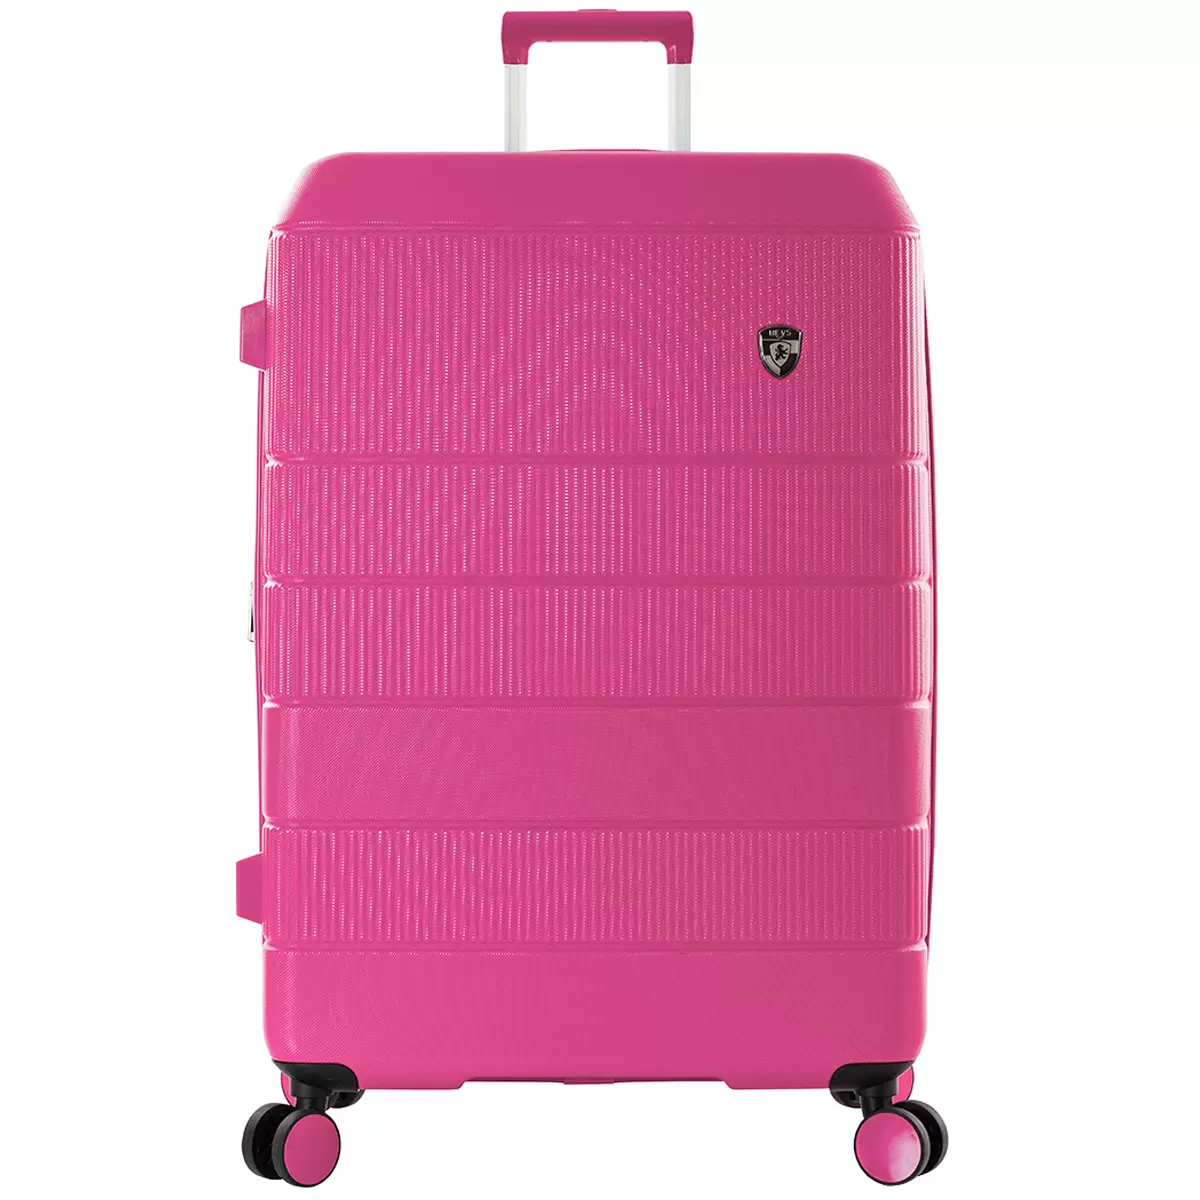 Heys Neo 3 Piece Hardside Luggage Set